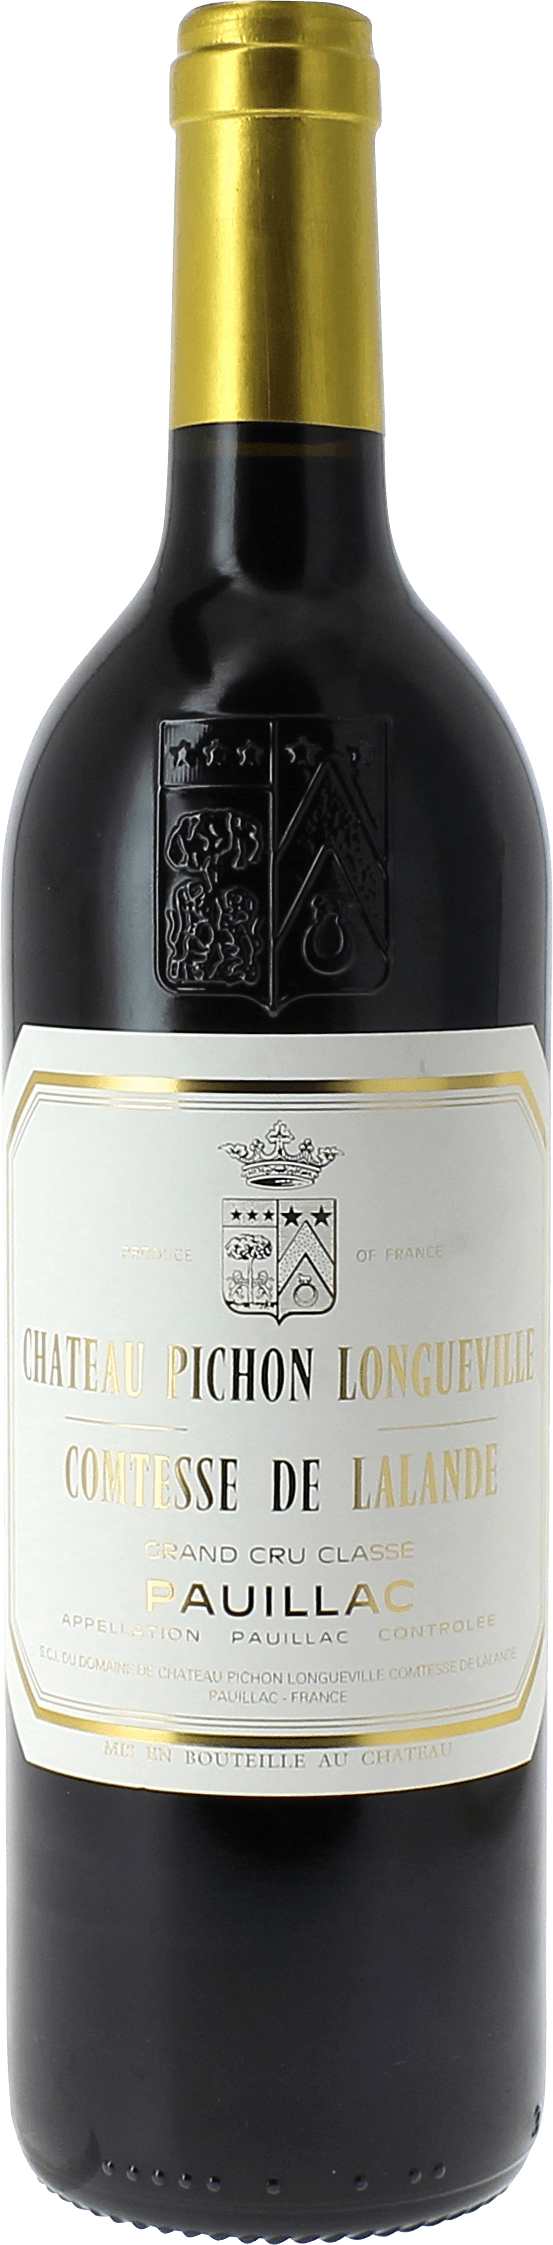 Pichon comtesse de lalande 2015 2me Grand cru class Pauillac, Bordeaux rouge